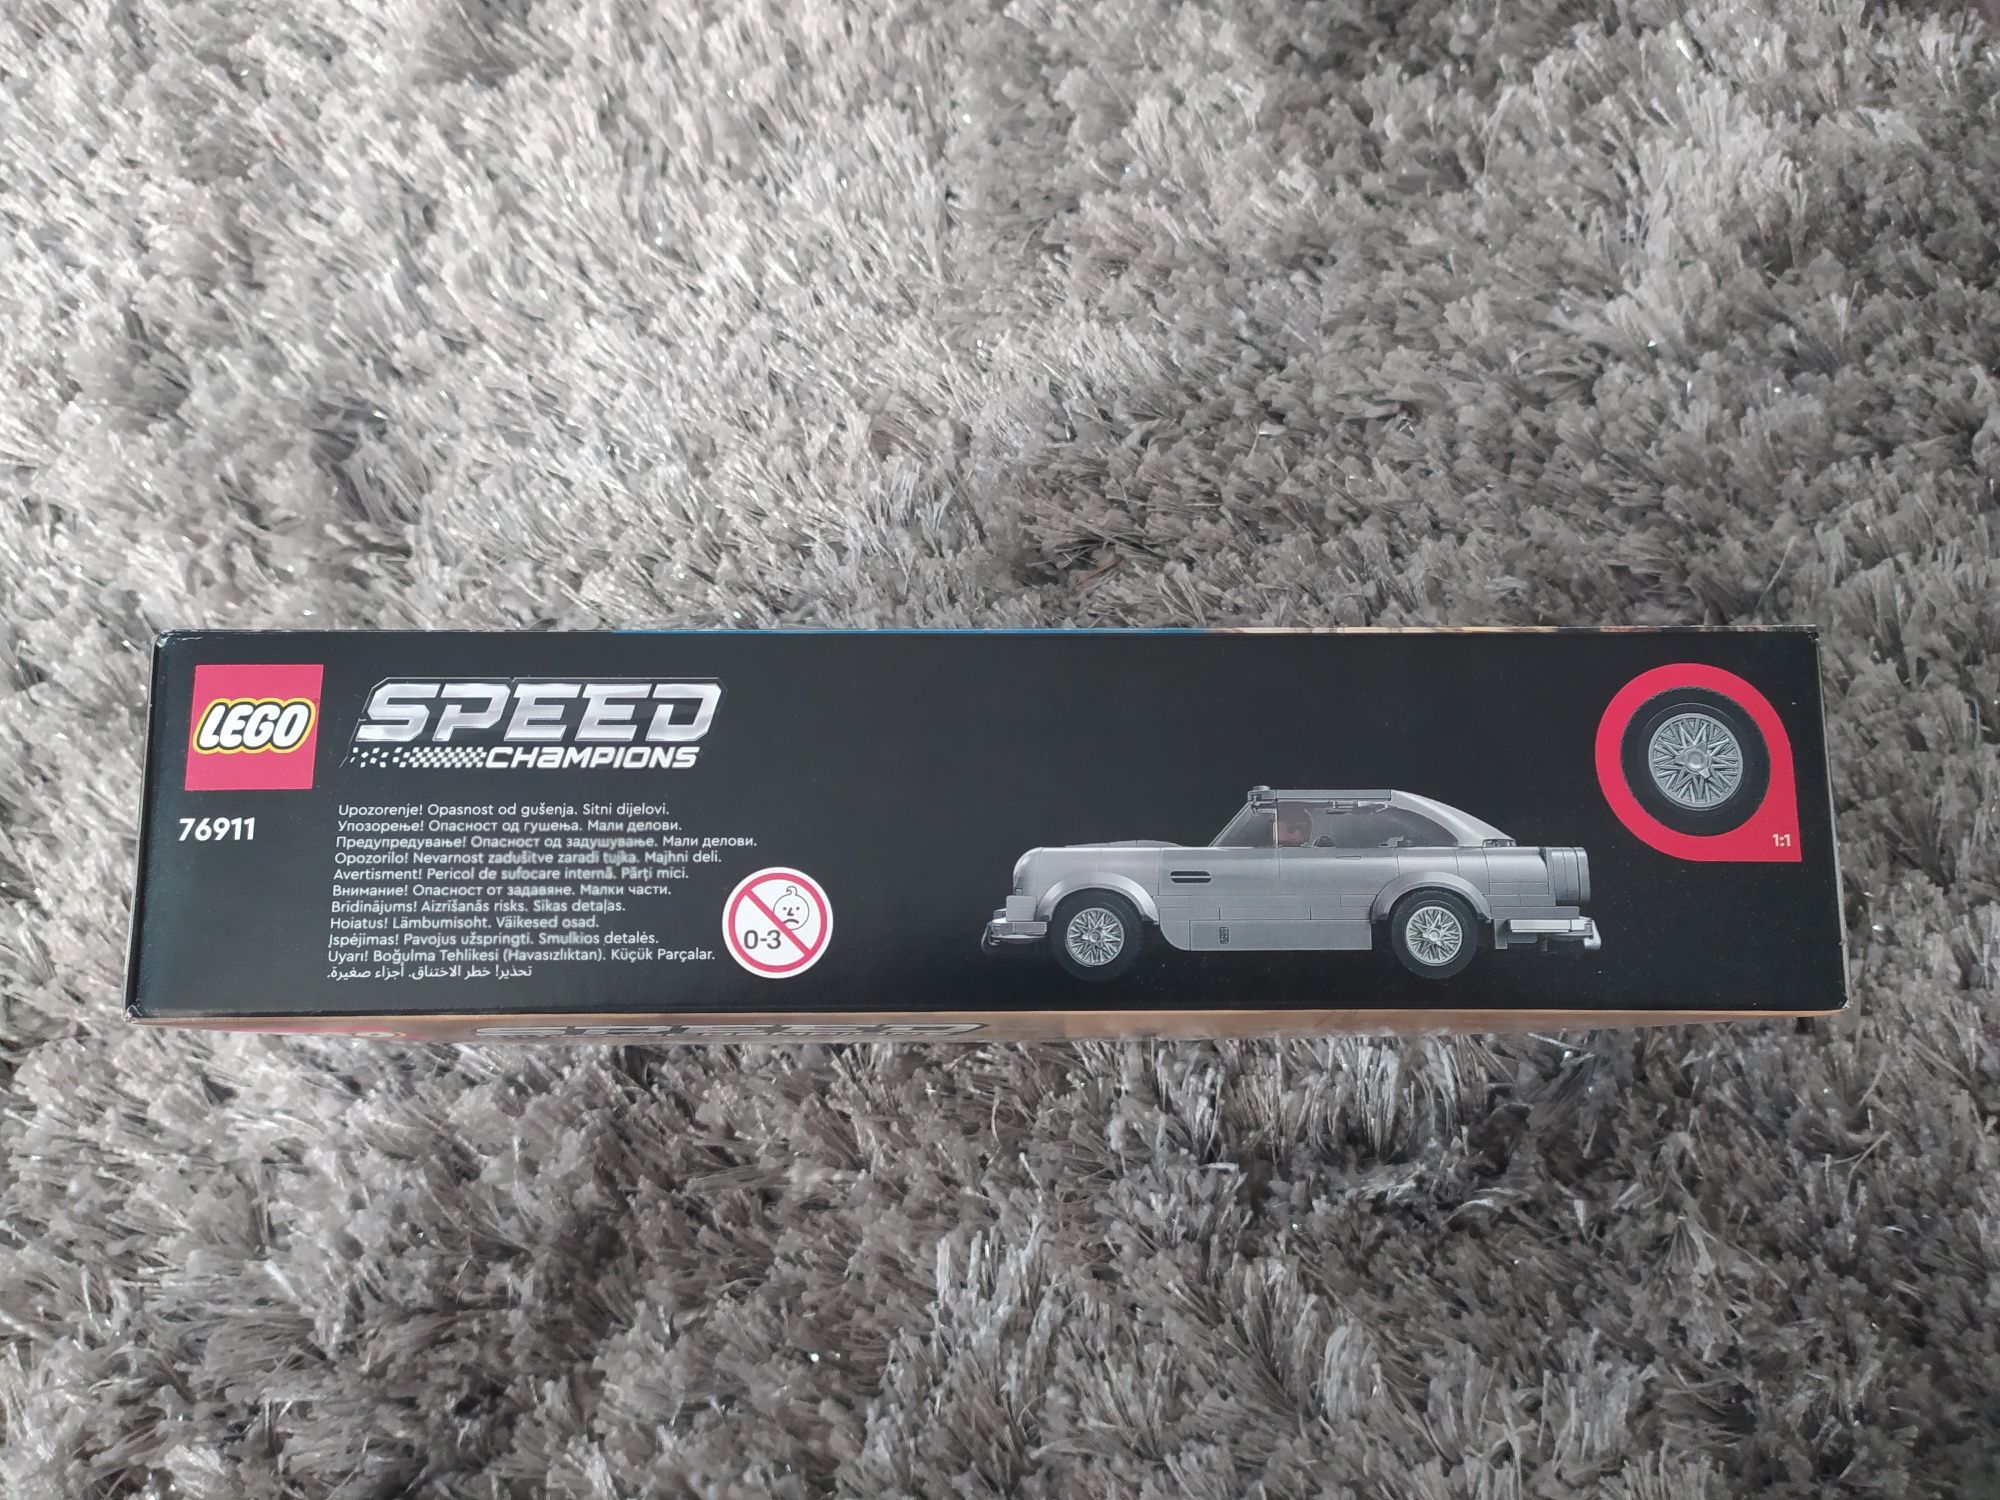 Zestaw LEGO Aston Martin 007 Speed 76911 8+ Wysyłka